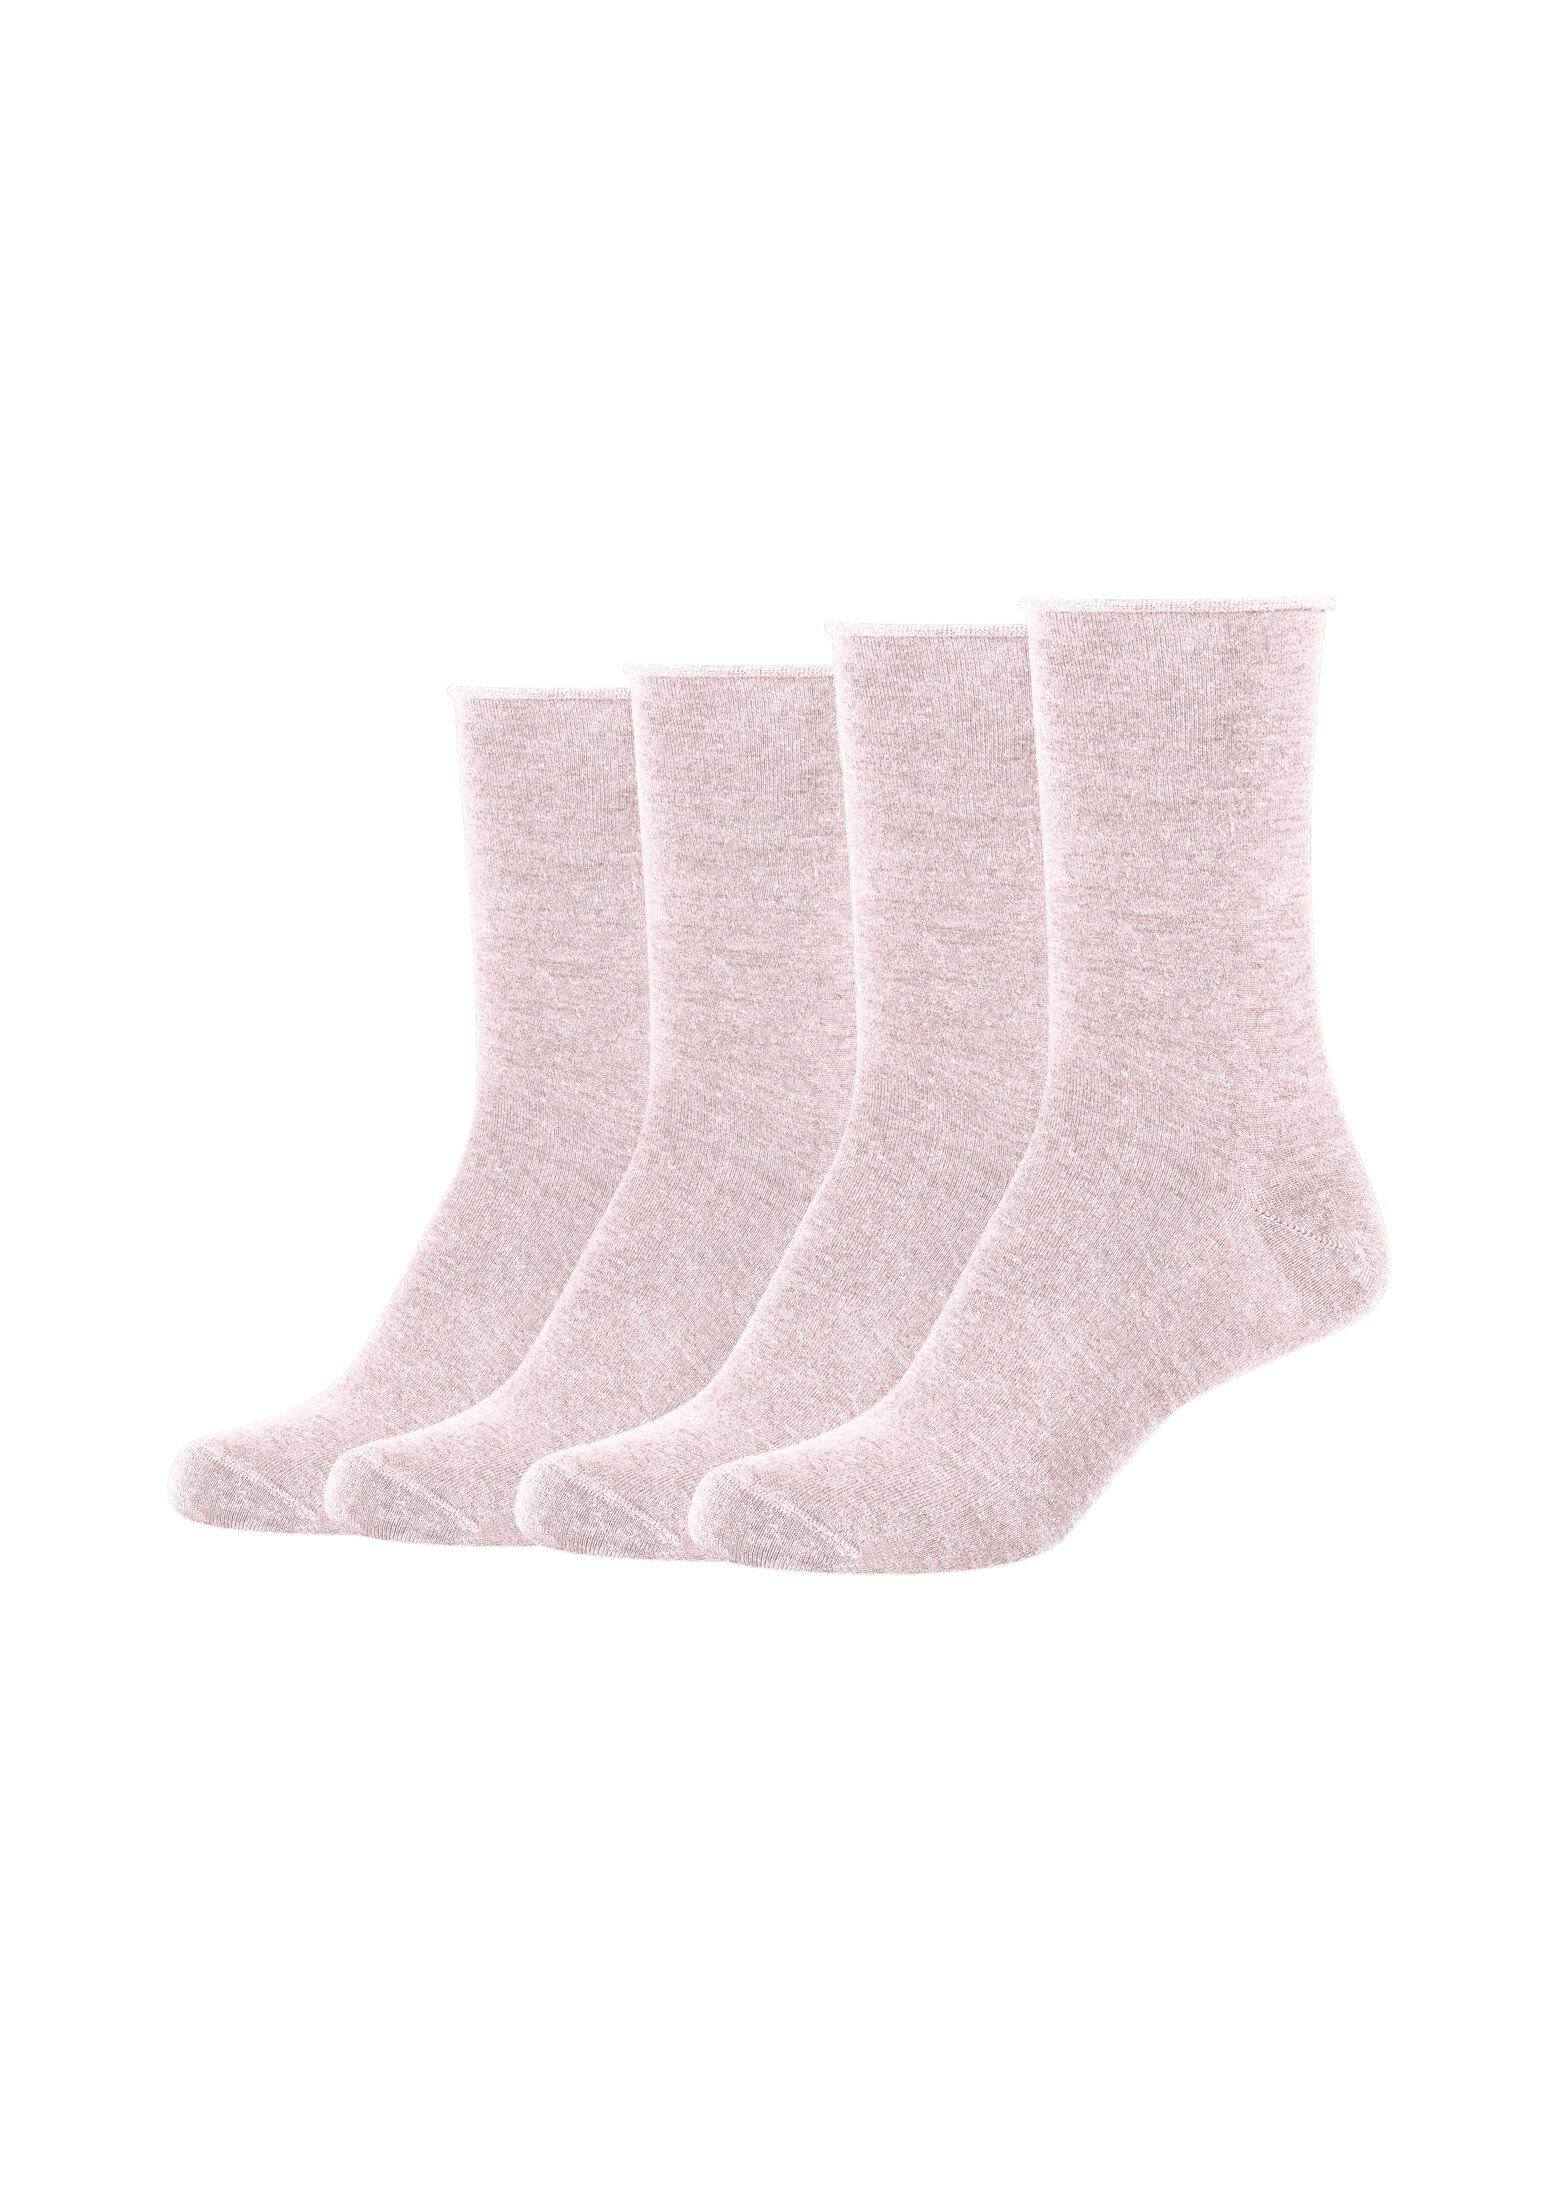 Socken Socken s.Oliver Pack 4er rosé melange